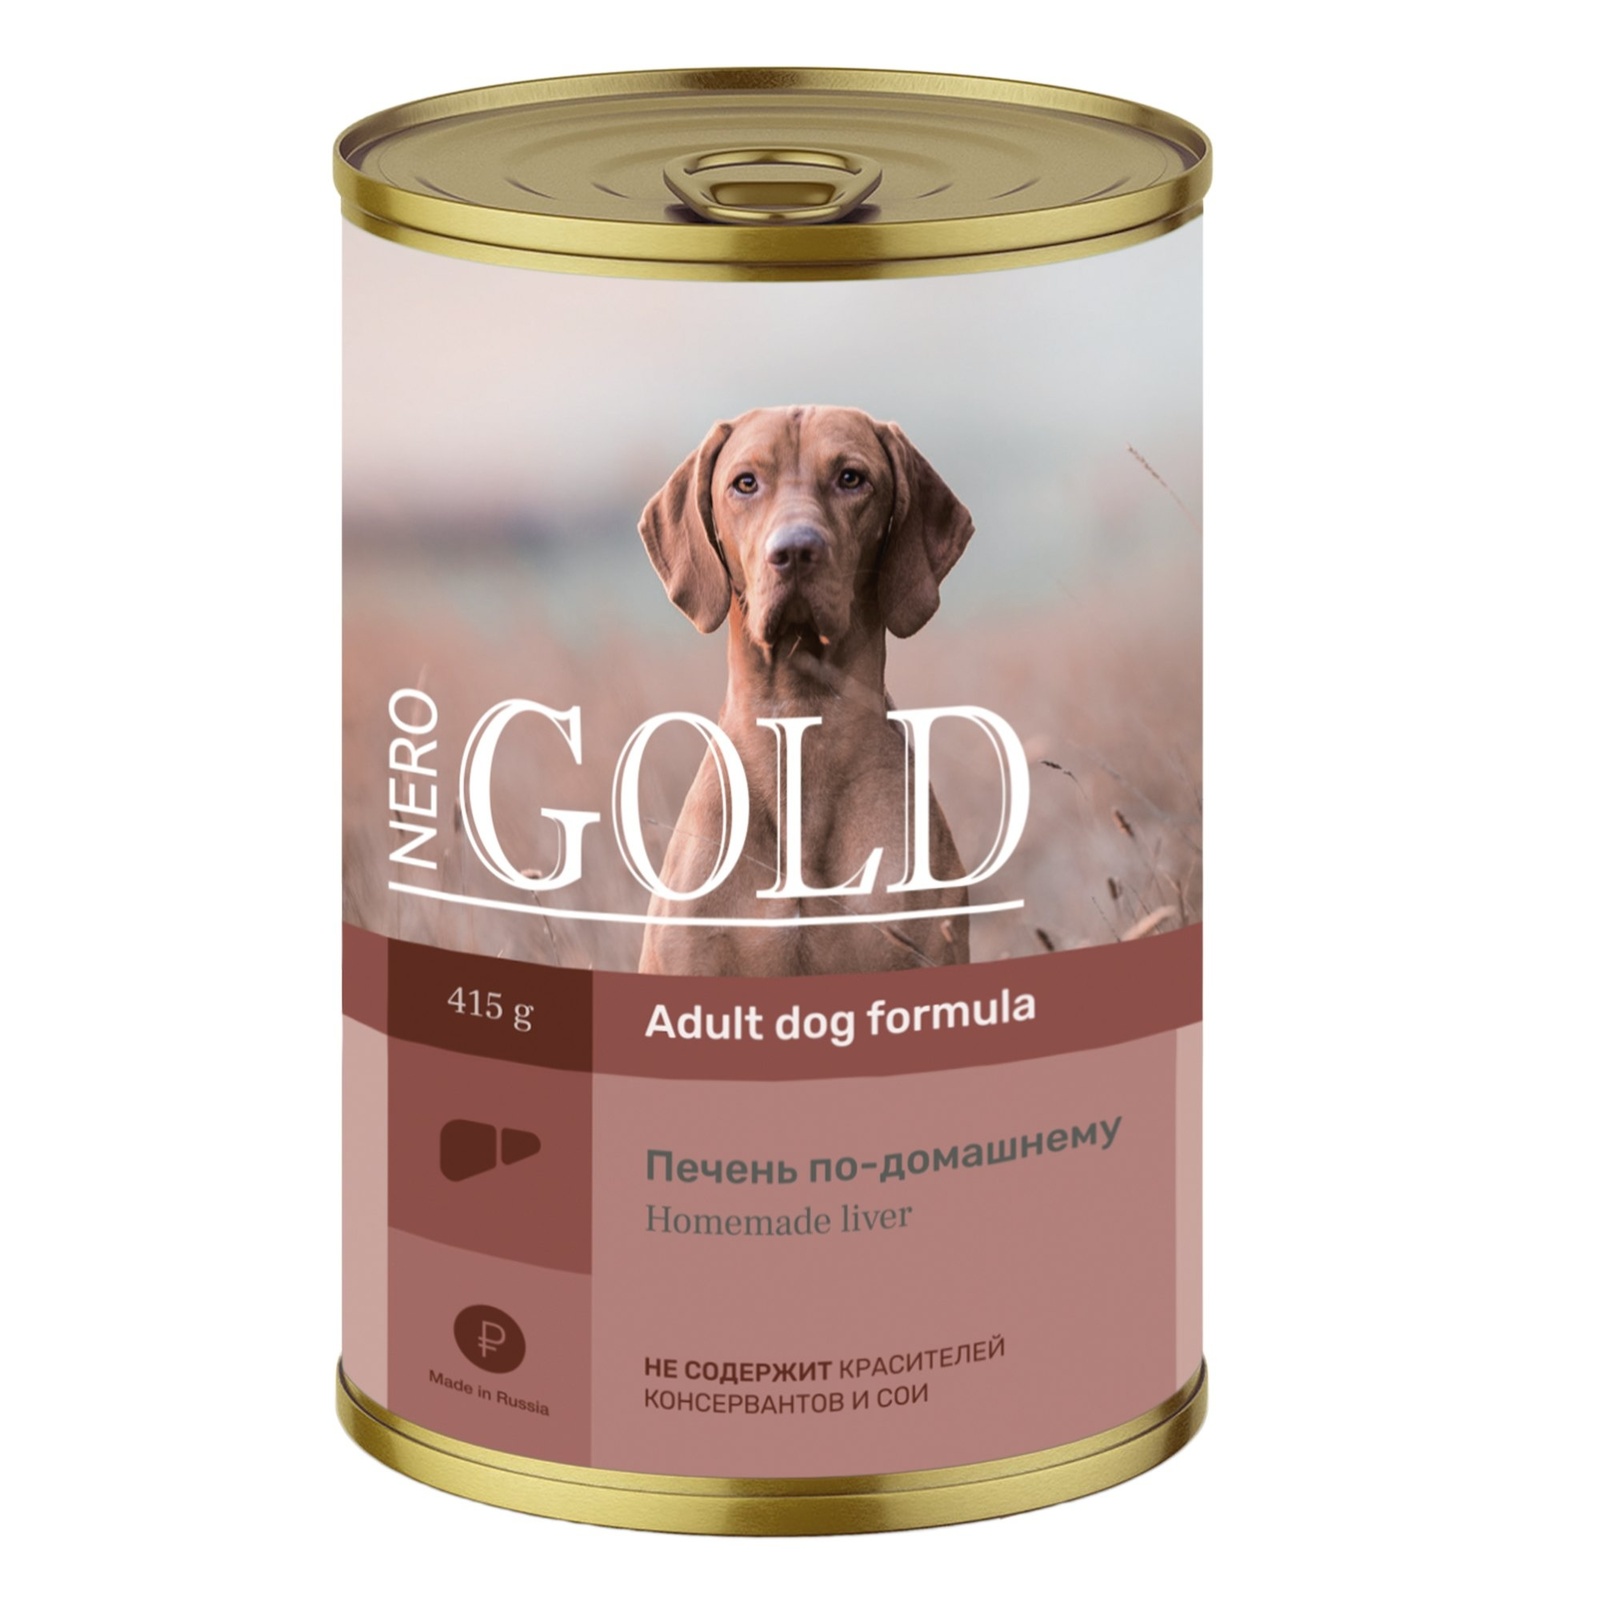 Nero Gold консервы Nero Gold консервы кусочки в желе для собак Печень по-домашнему (415 г)